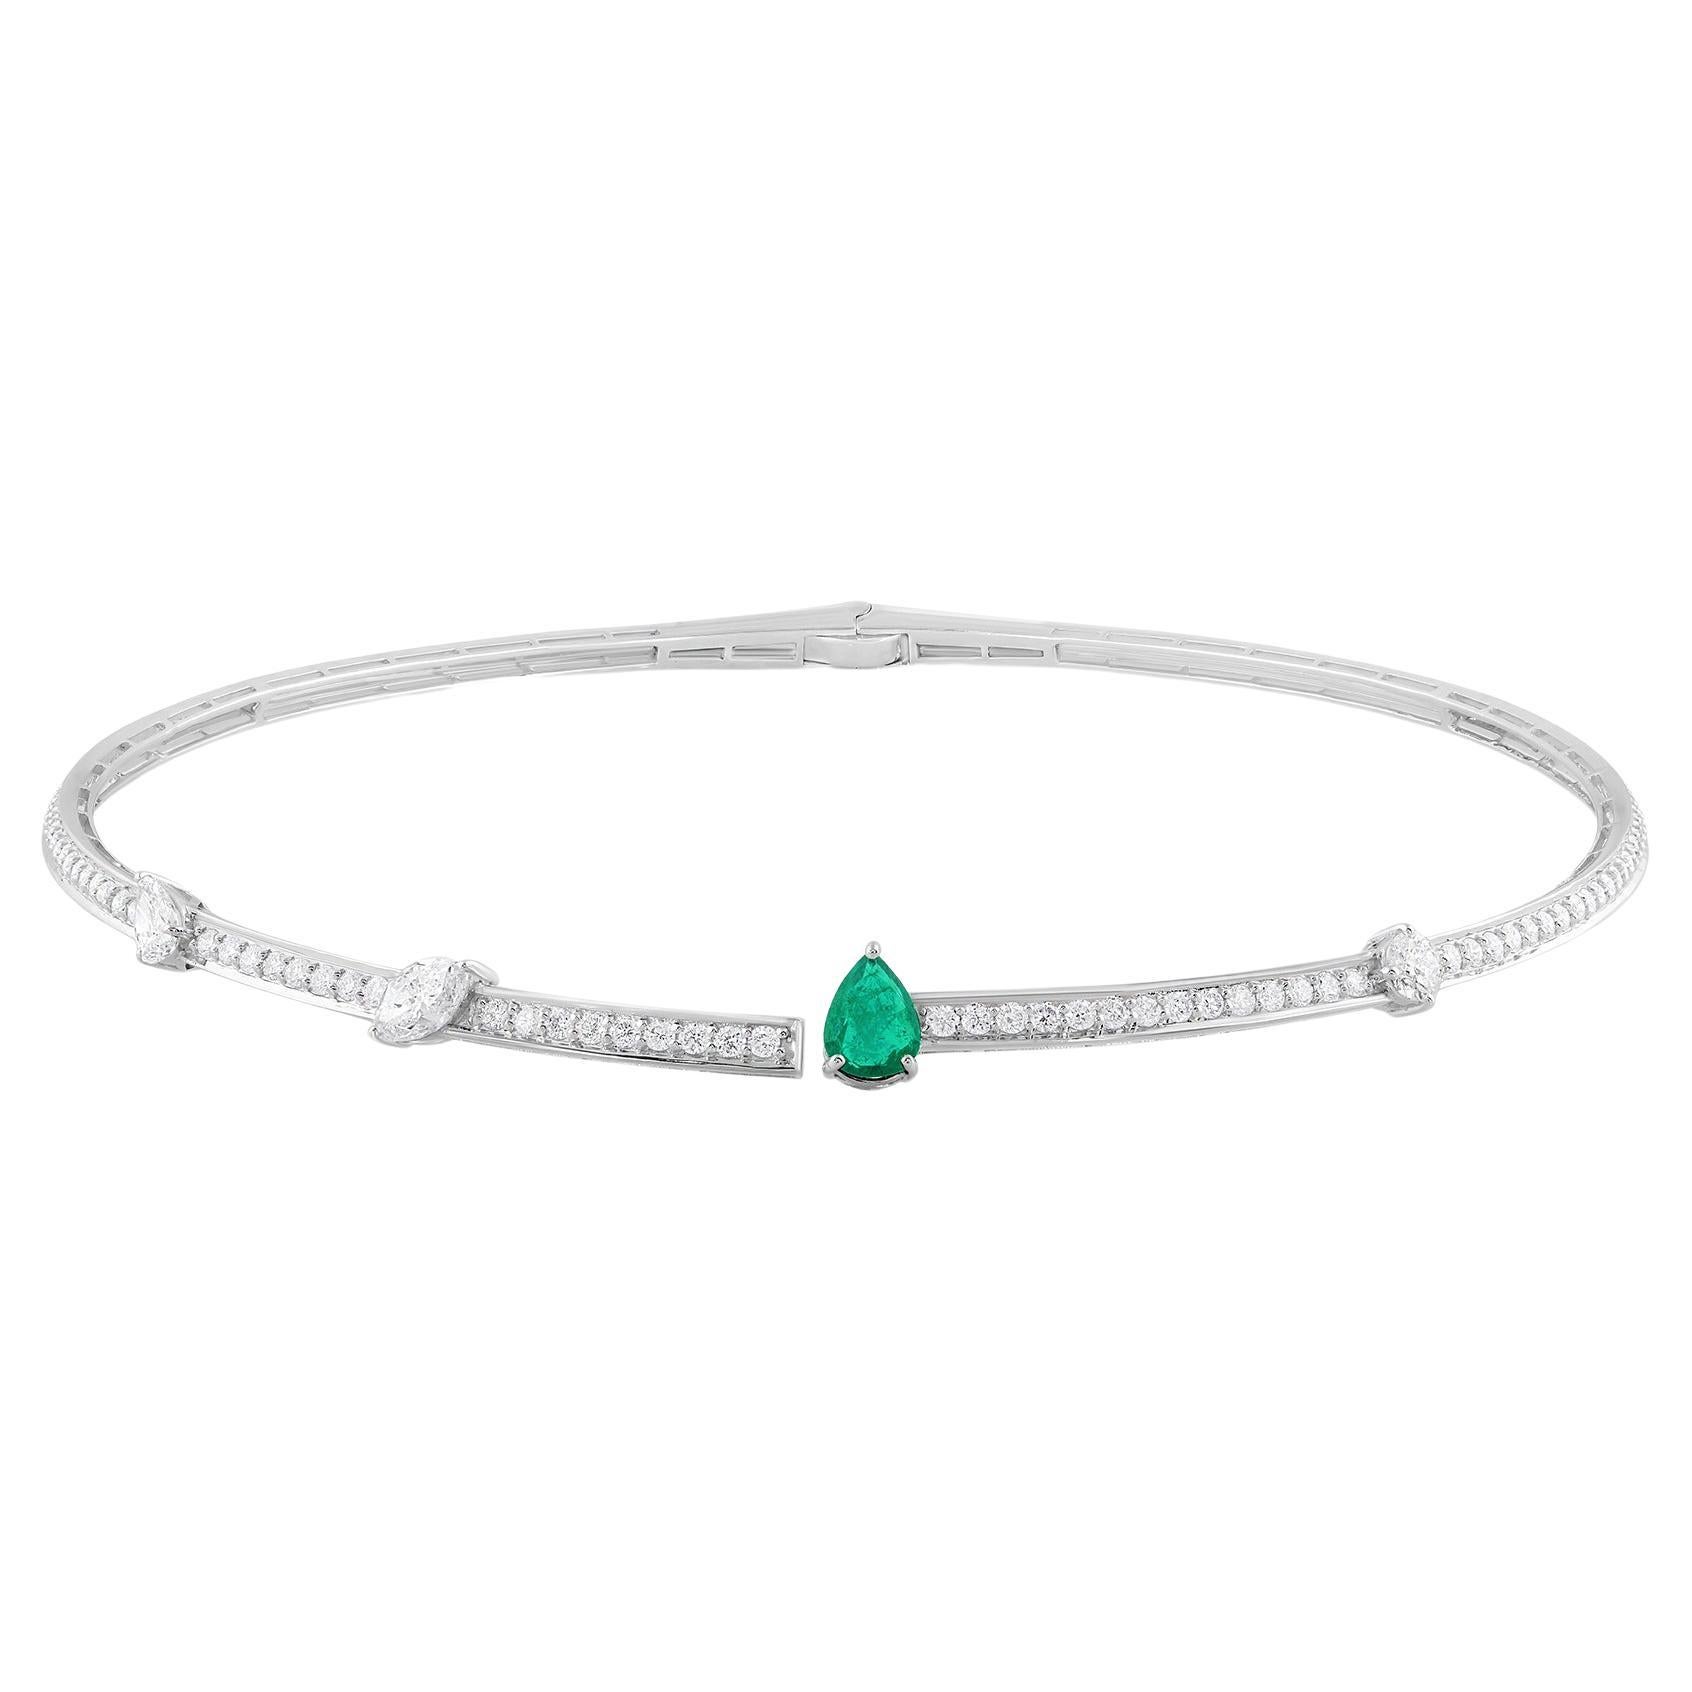 Pear Zambian Emerald Choker Necklace Diamond 14 Karat White Gold Fine Jewelry